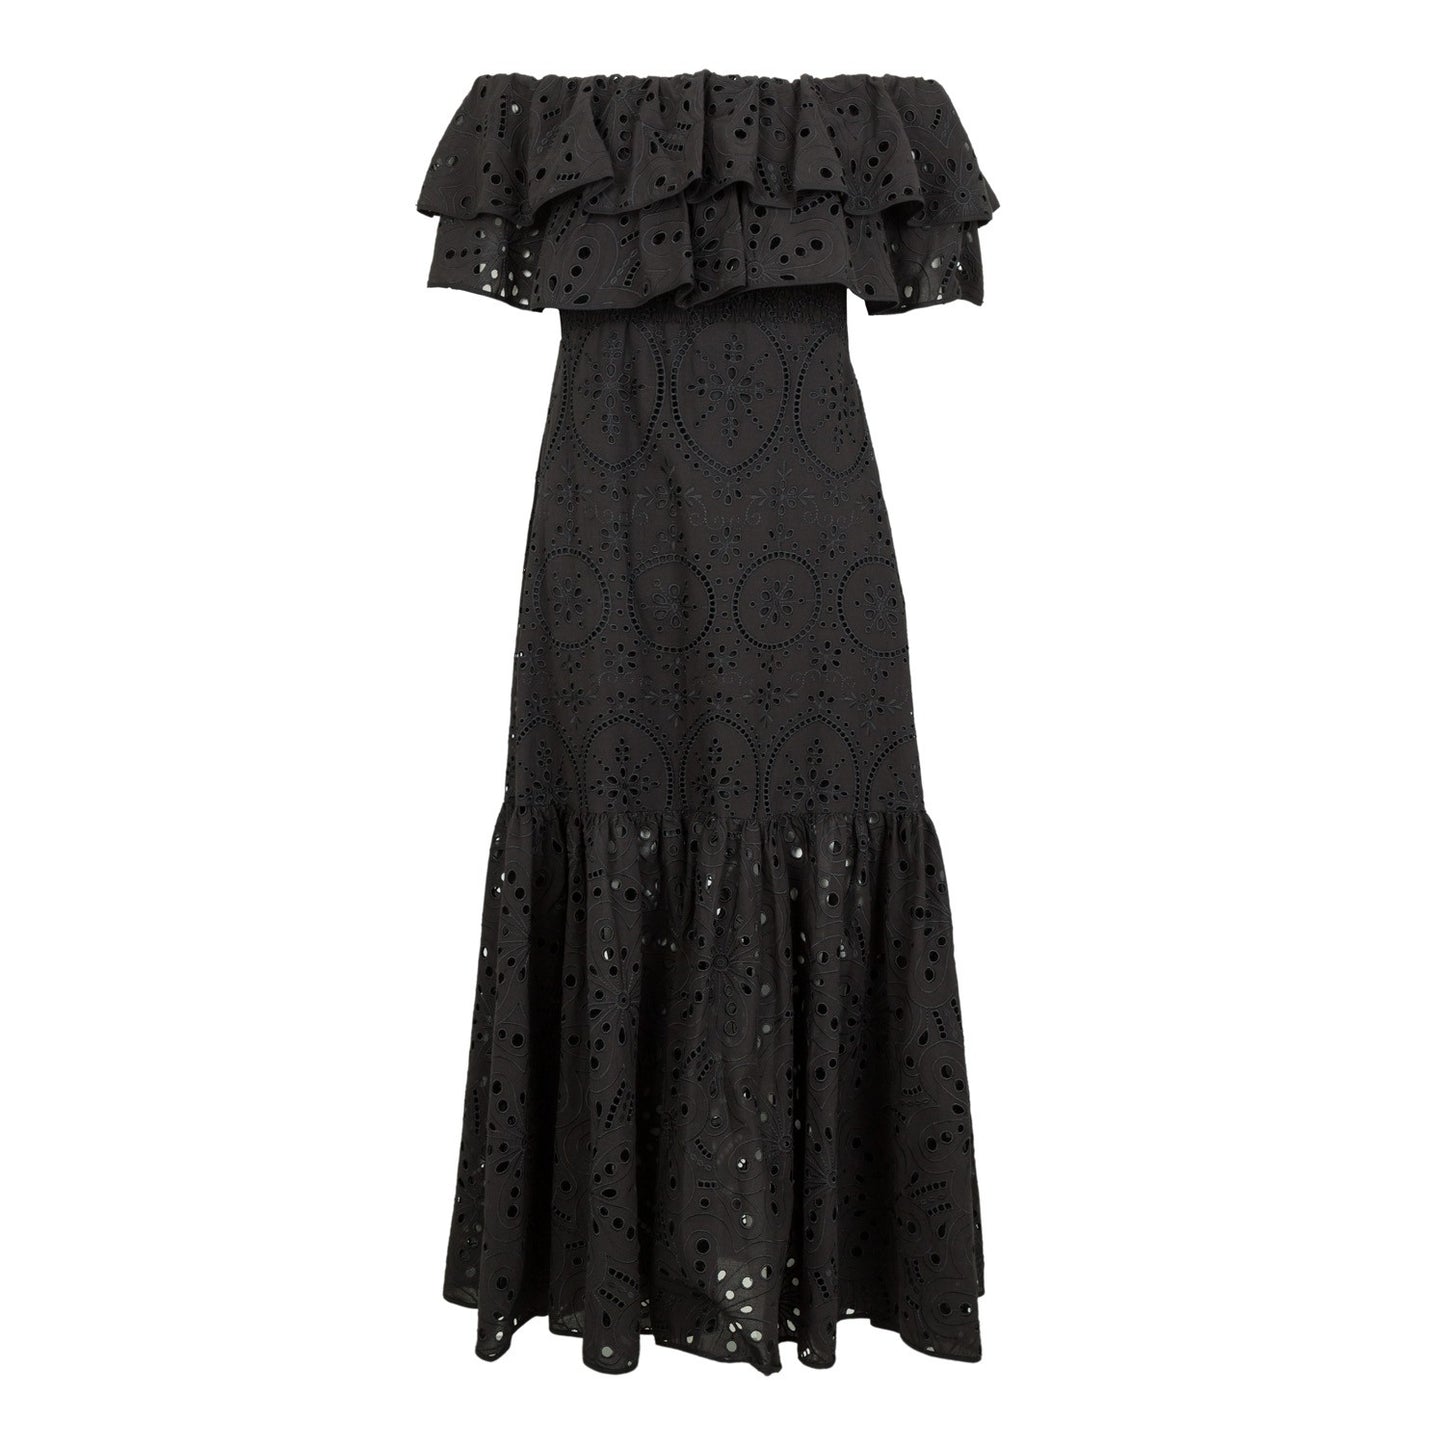 Charo Ruiz Isabella Long Dress - Premium Dresses from Marina St Barth - Just $845.00! Shop now at Marina St Barth